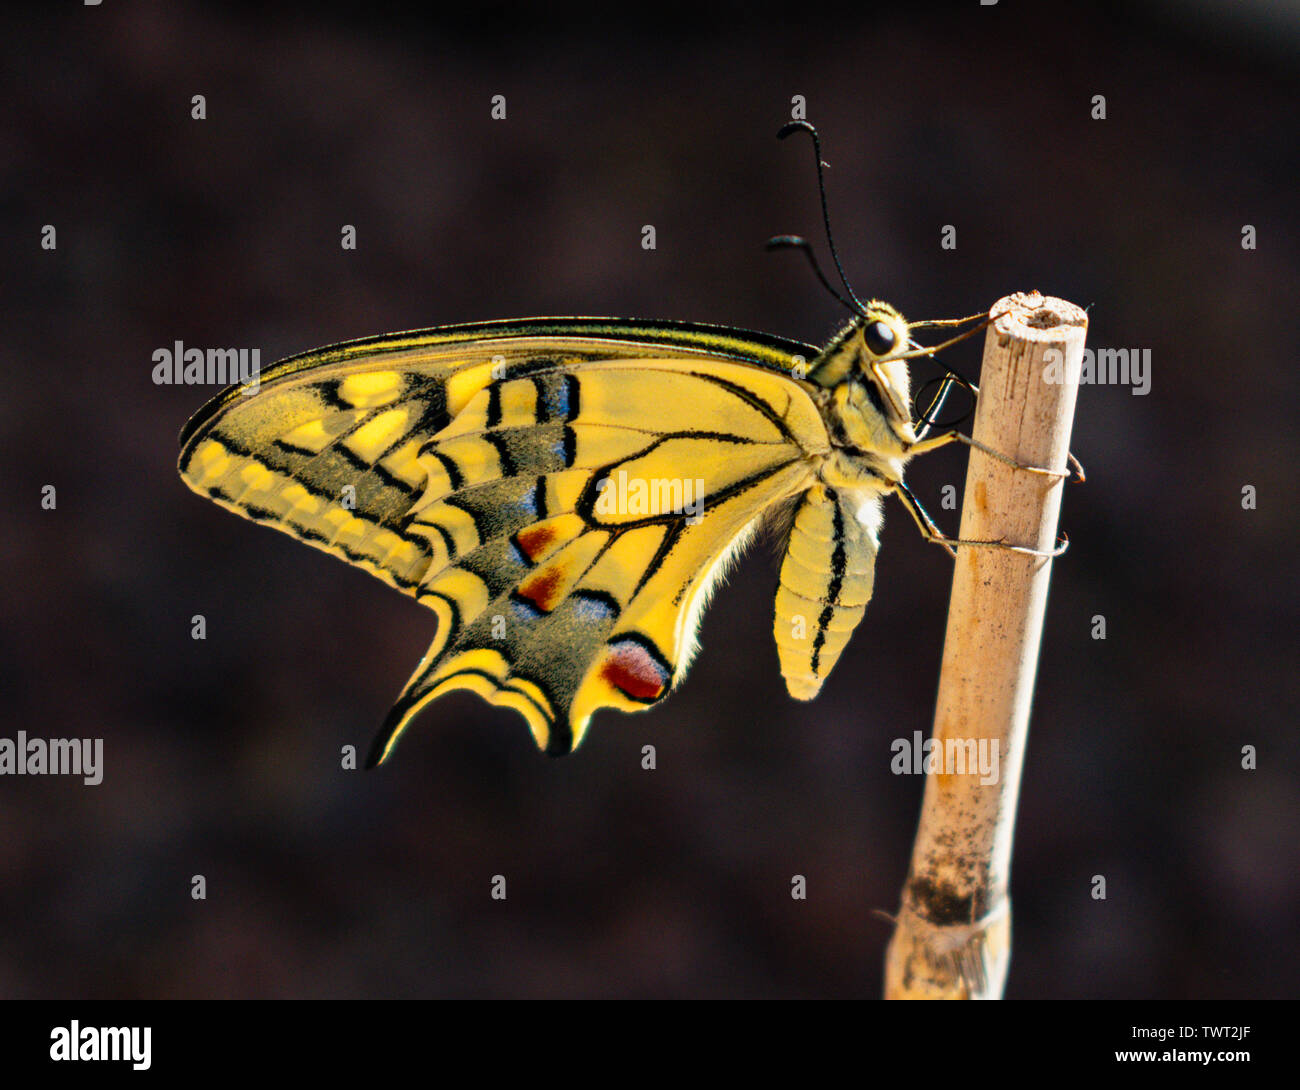 Hintergrundbeleuchtung Profil einer neu entstandenen gelben Schwalbenschwanz Schmetterling mit einem Bambusstock auf einem dunkelgrauen Hintergrund festhalten Stockfoto